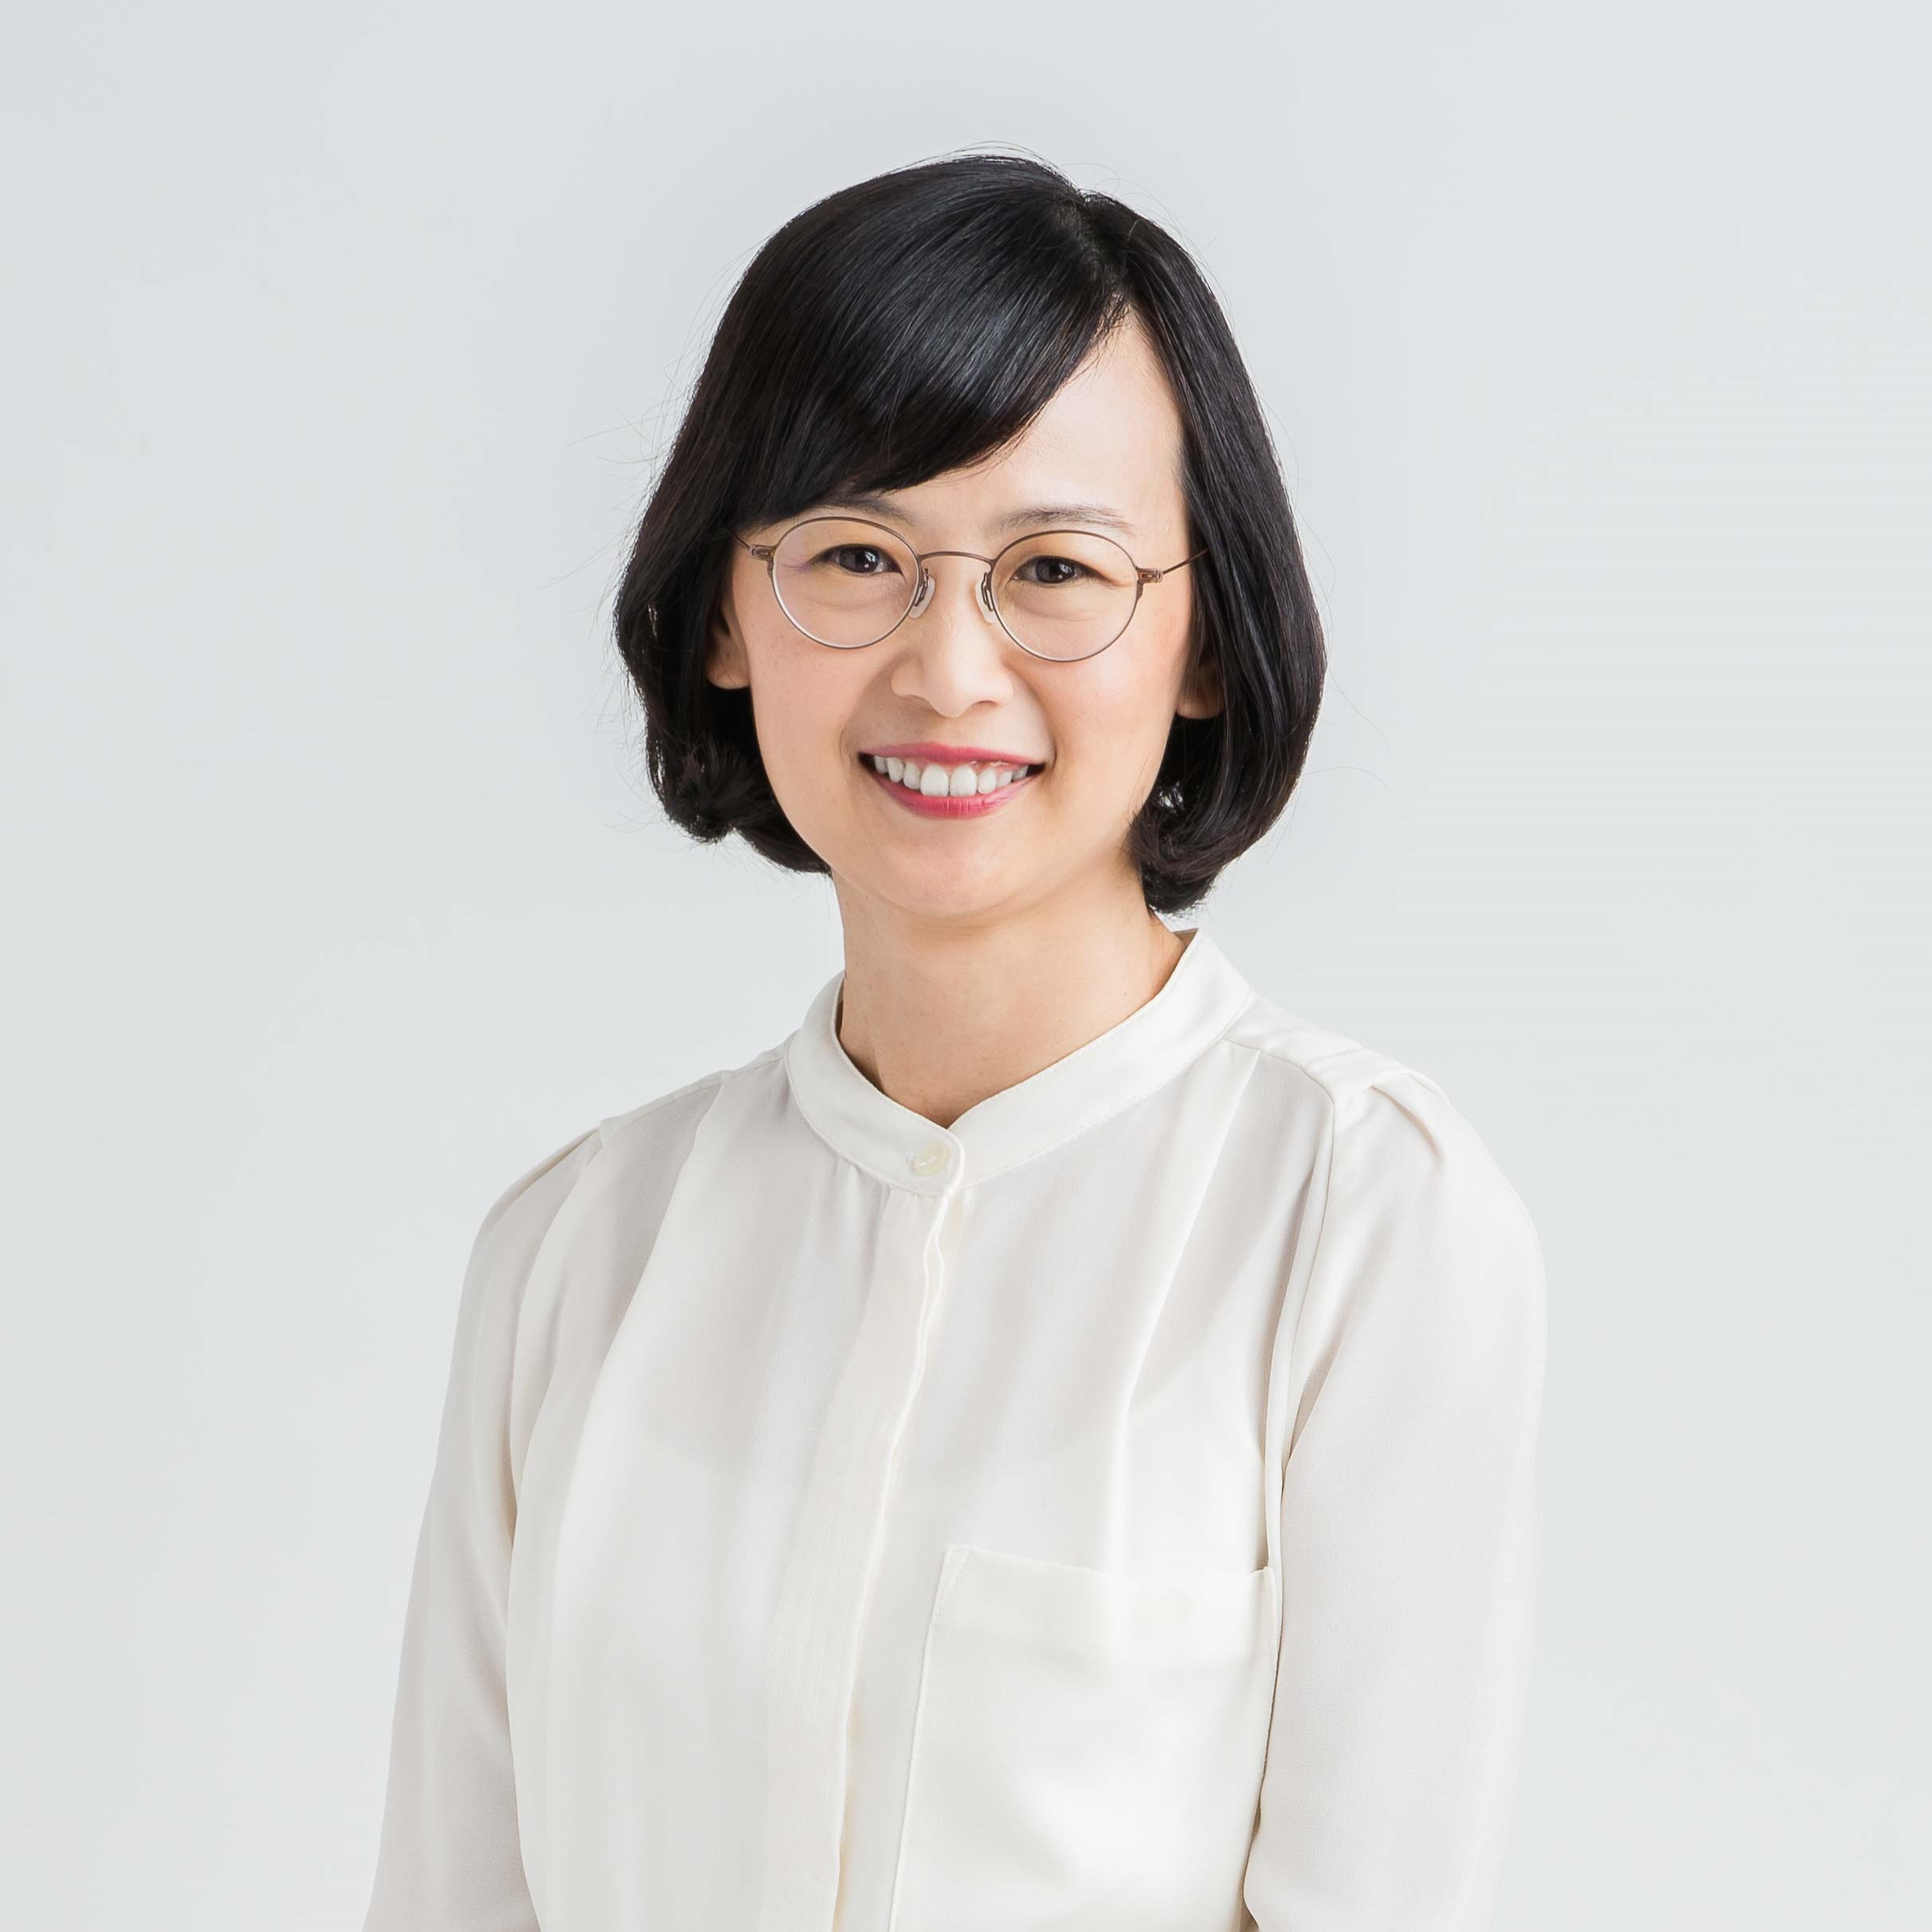 Ms Yong Pei Chean